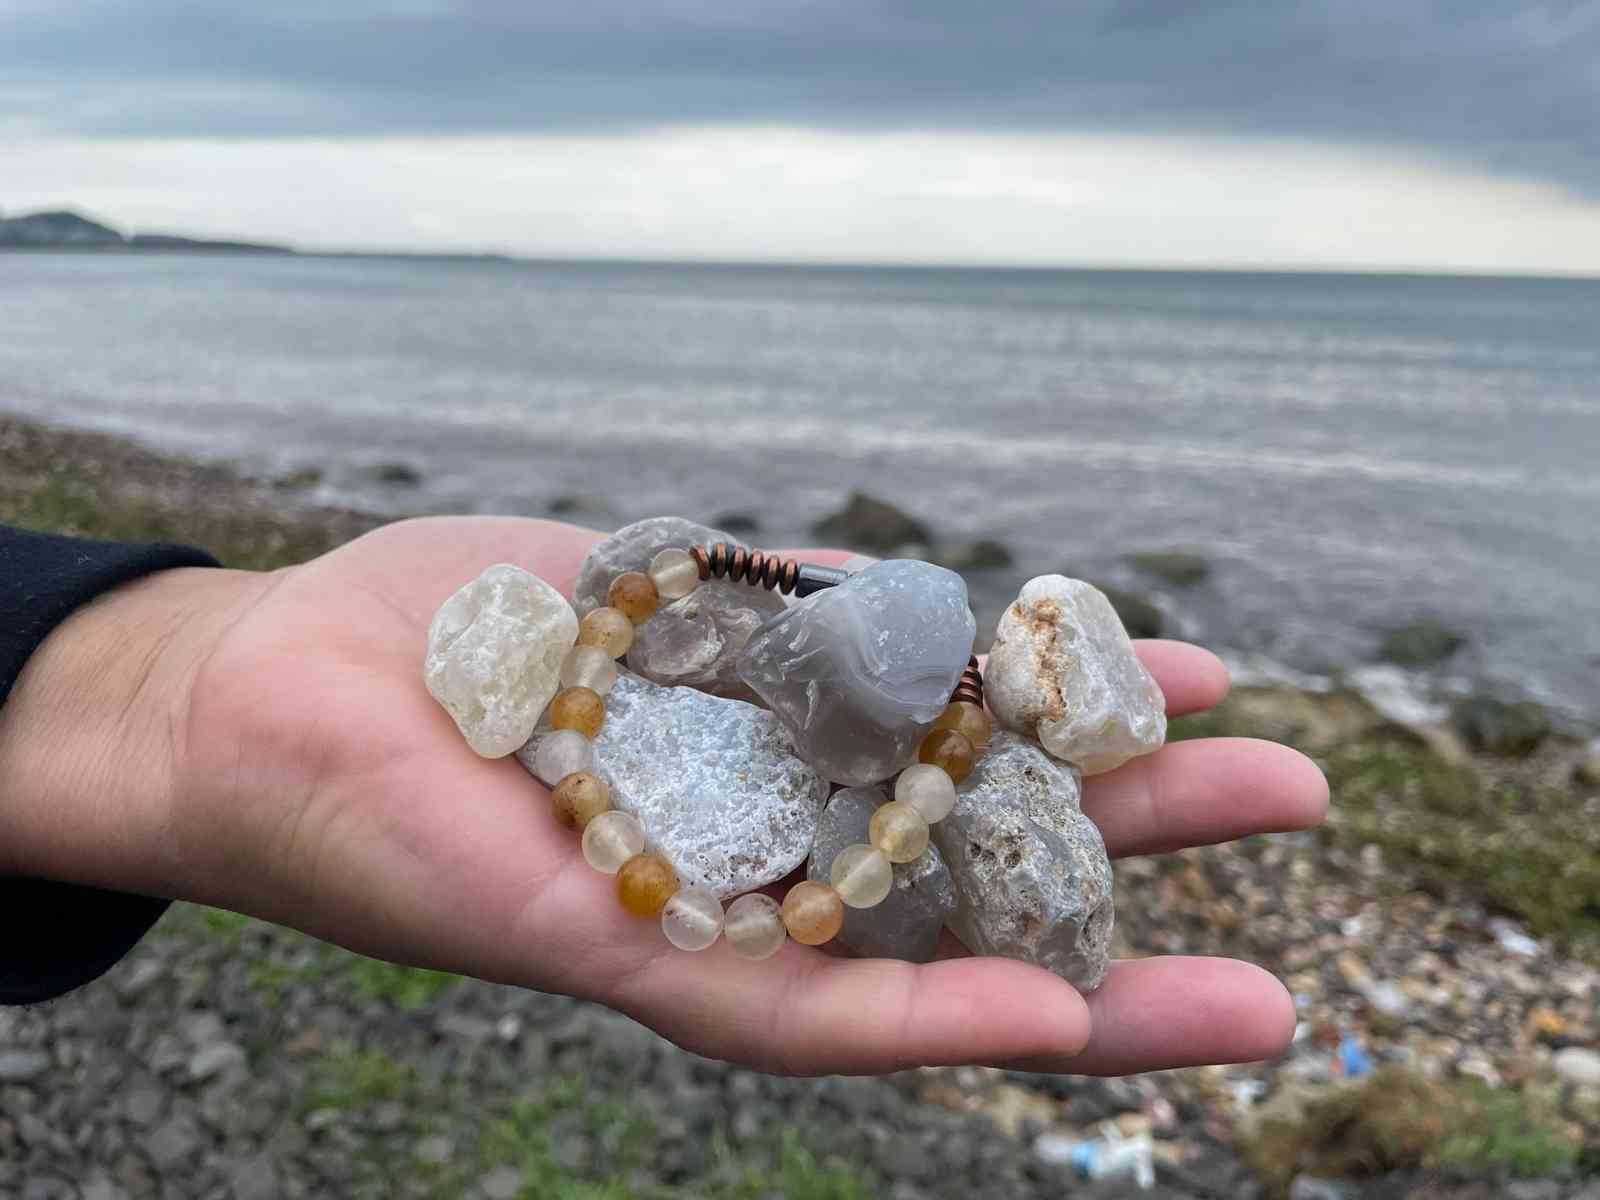 Fatsa sahilindeki değerli taşlar ilgi çekiyor
